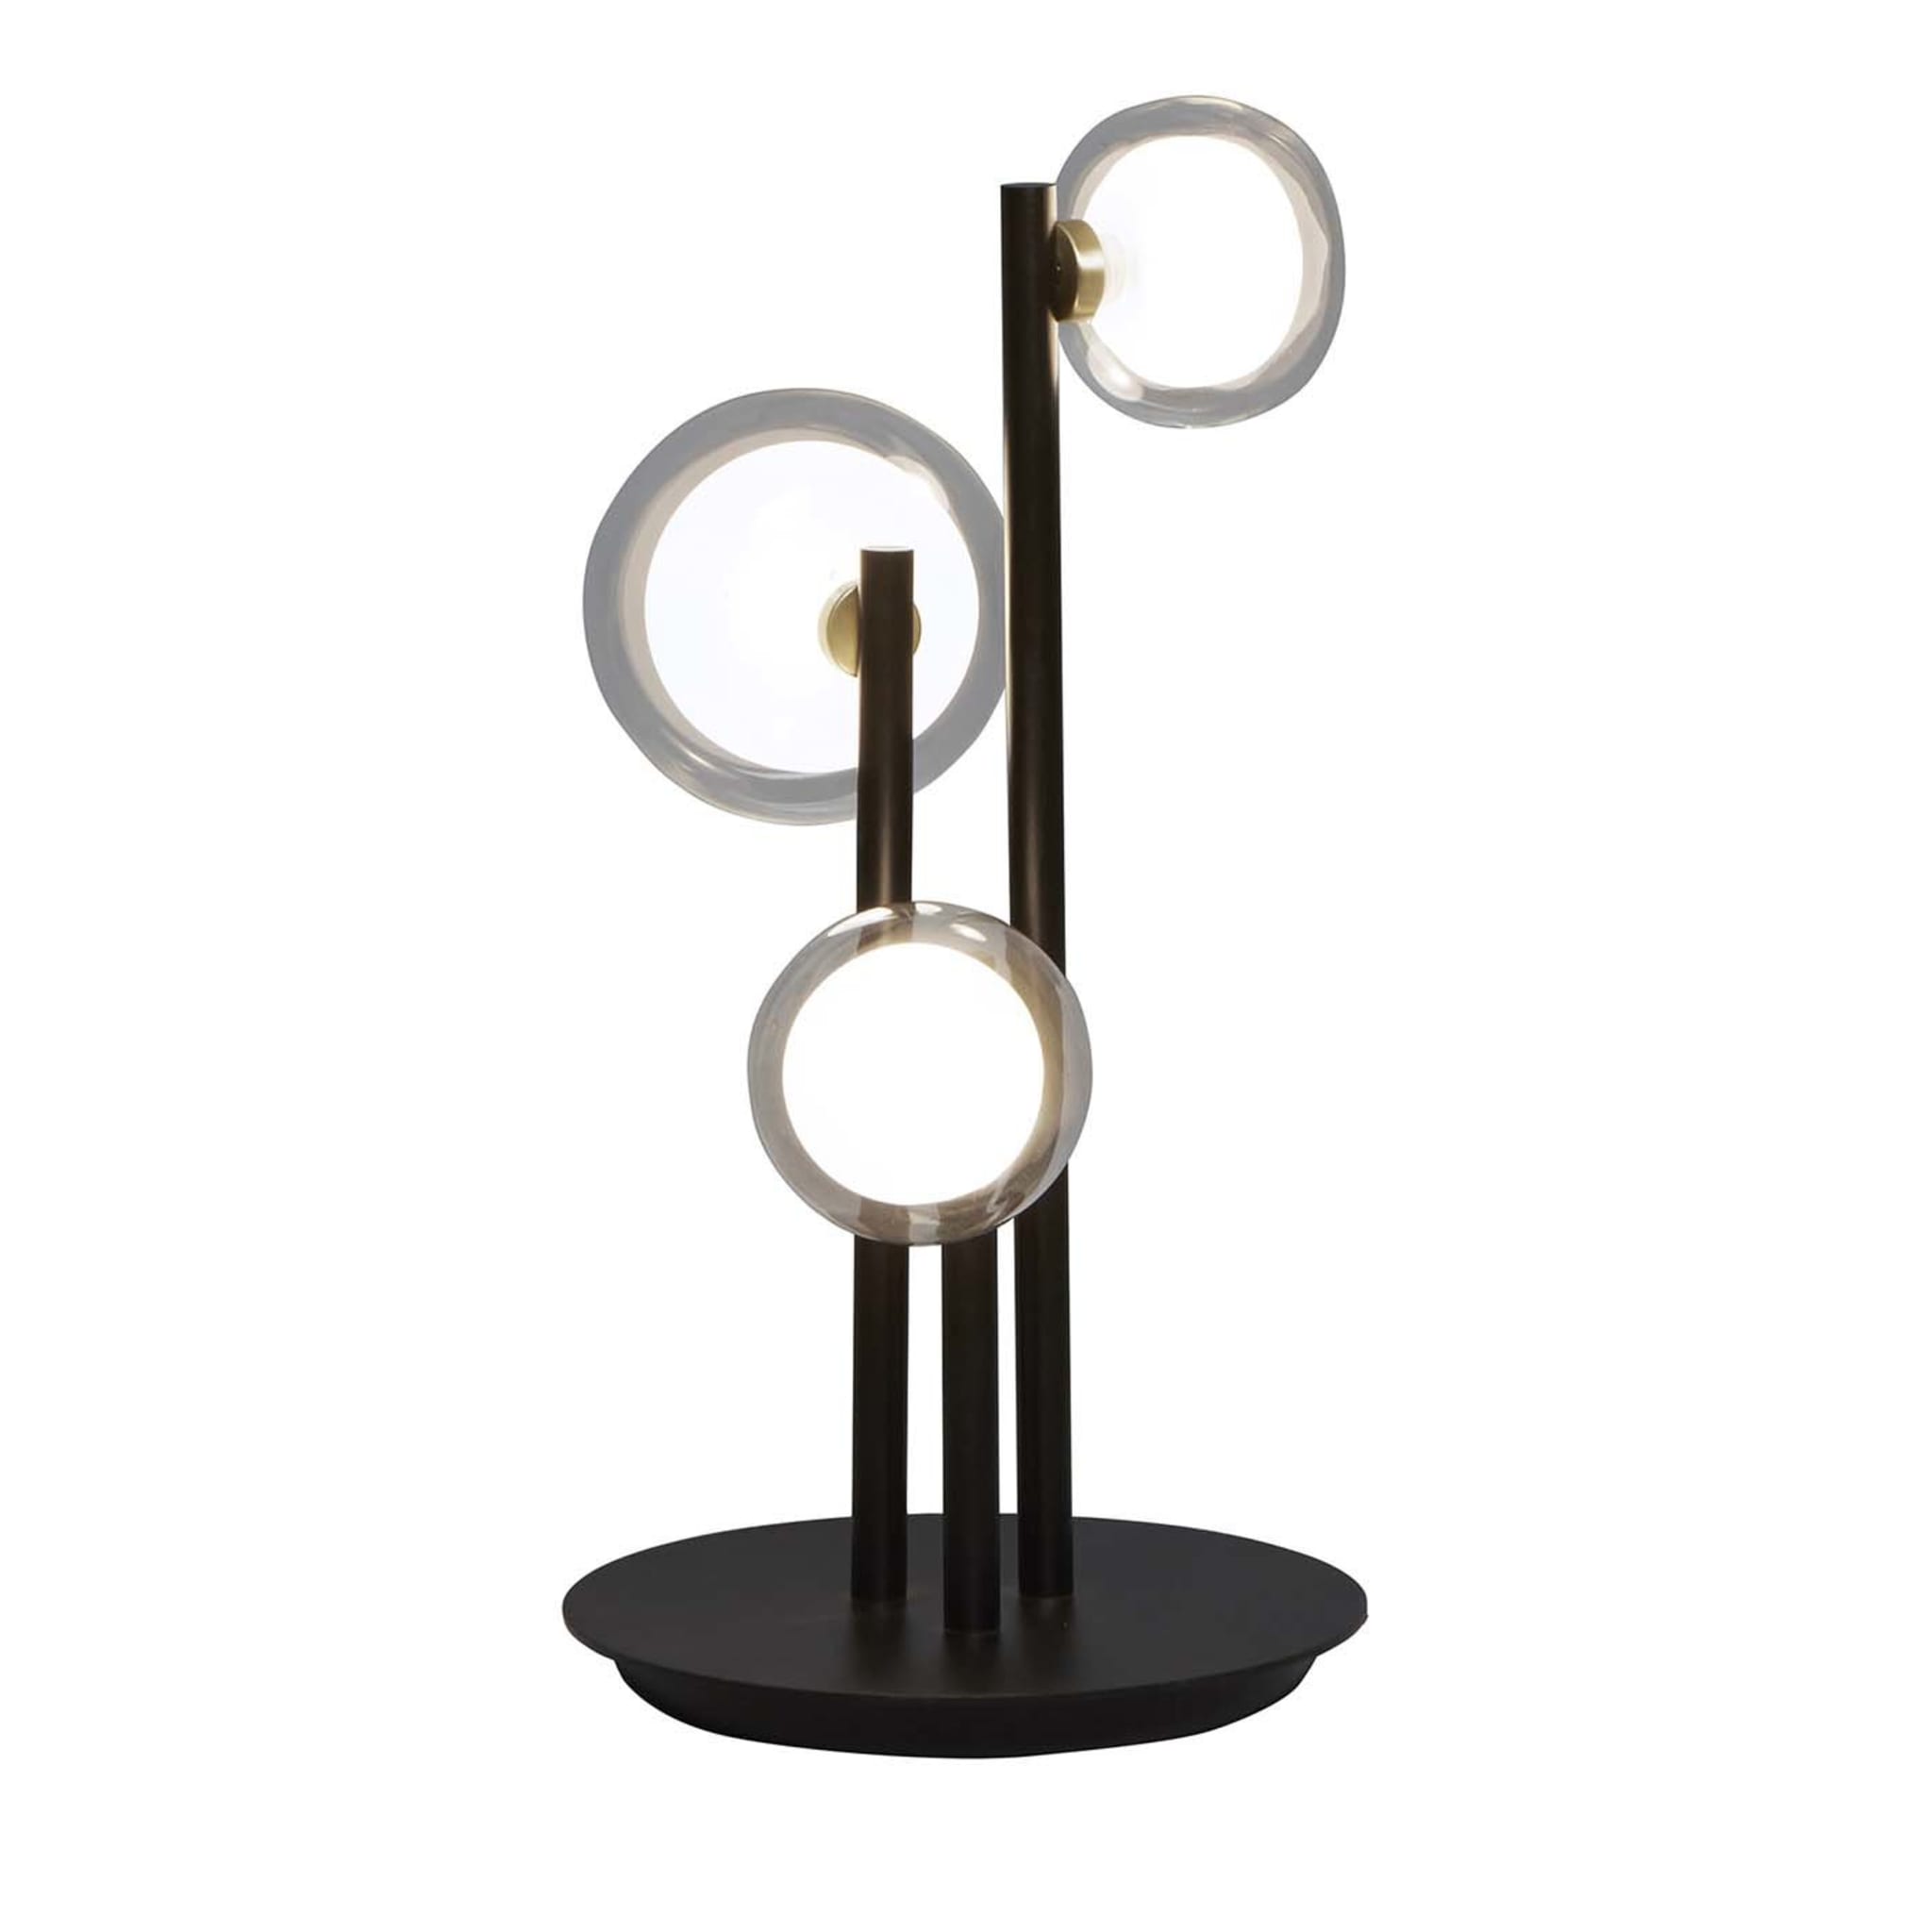 Nabila Three Circles Table Lamp by Corrado Dotti - Main view